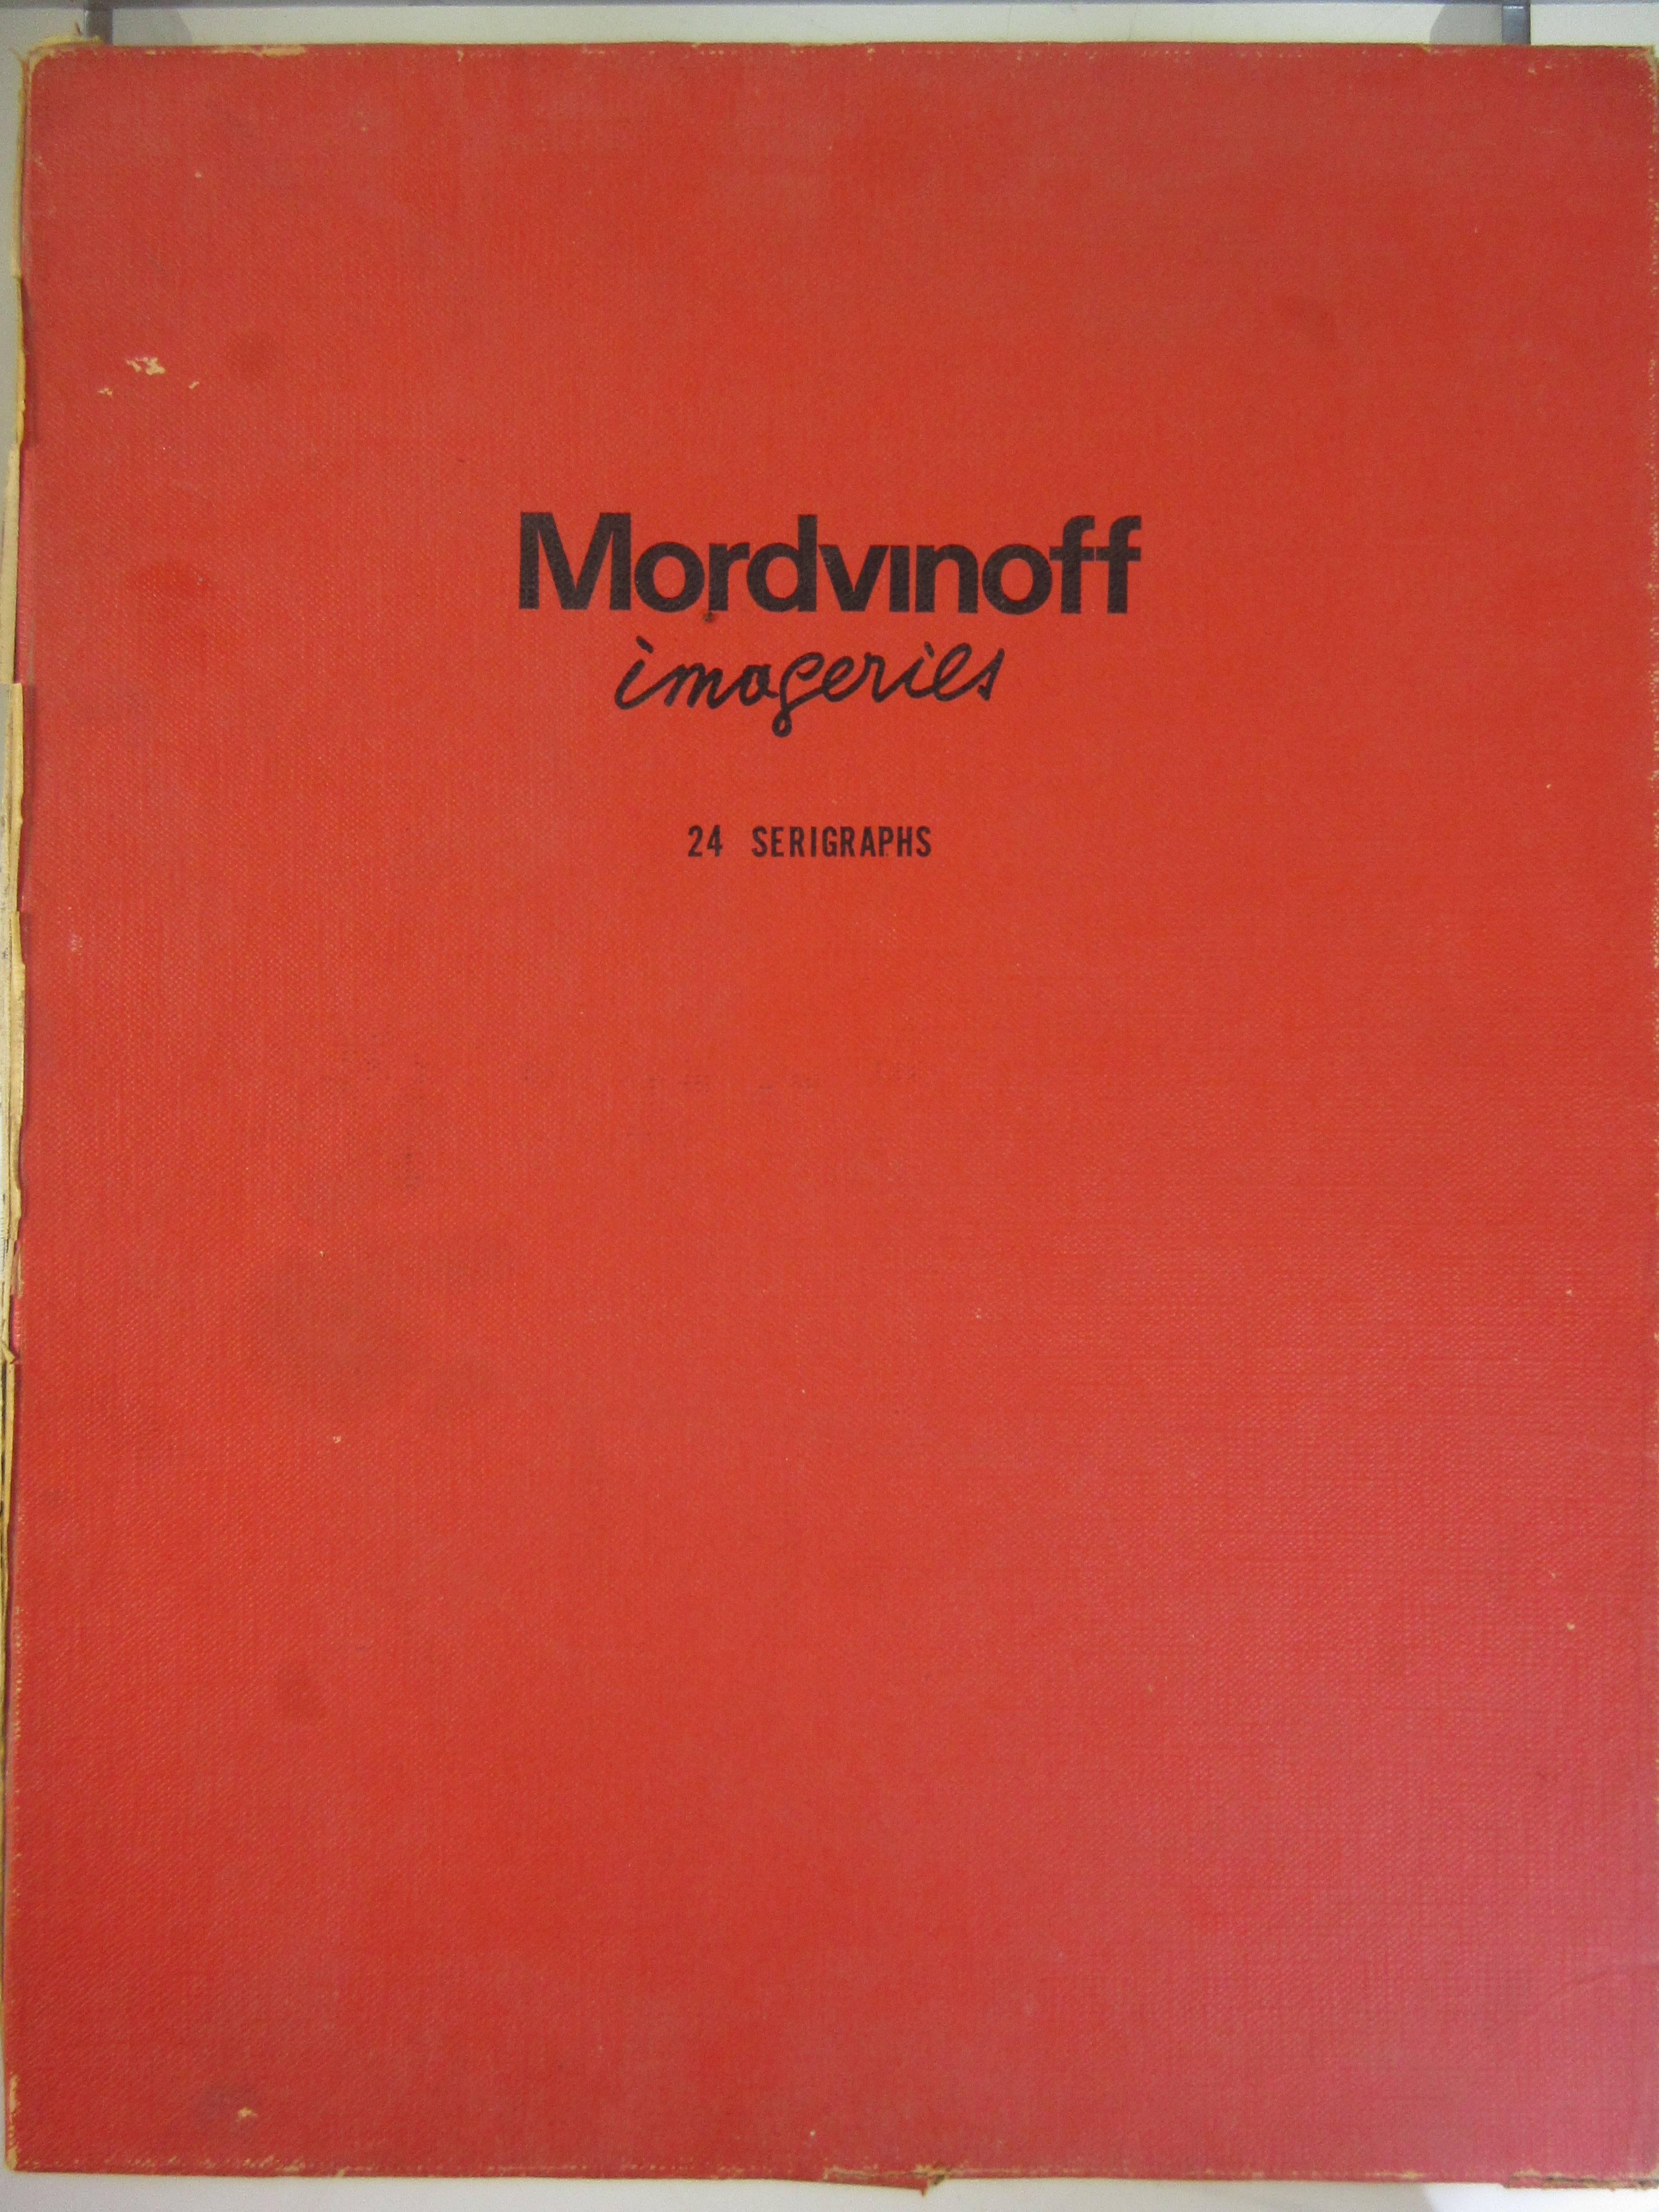 Diese seltene Mappe von Mordinoff aus den 1970er Jahren enthält 24 Originaldrucke in limitierter Auflage, die einen stark stilisierten erotischen Charakter haben. Der 1911 in St. Petersburg geborene Mordvinoff studierte bei Ferdinand Leger in Paris